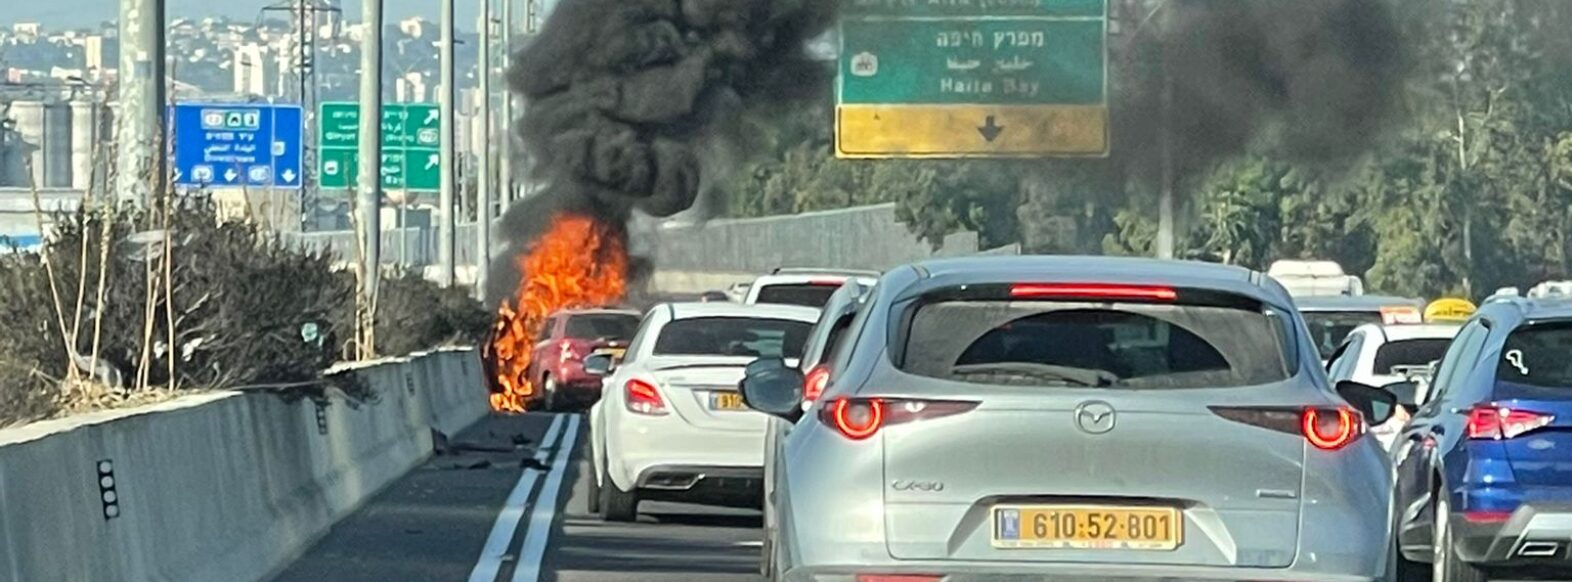 כביש 22 רכב עלה באש,פקקים לכיוון חיפה